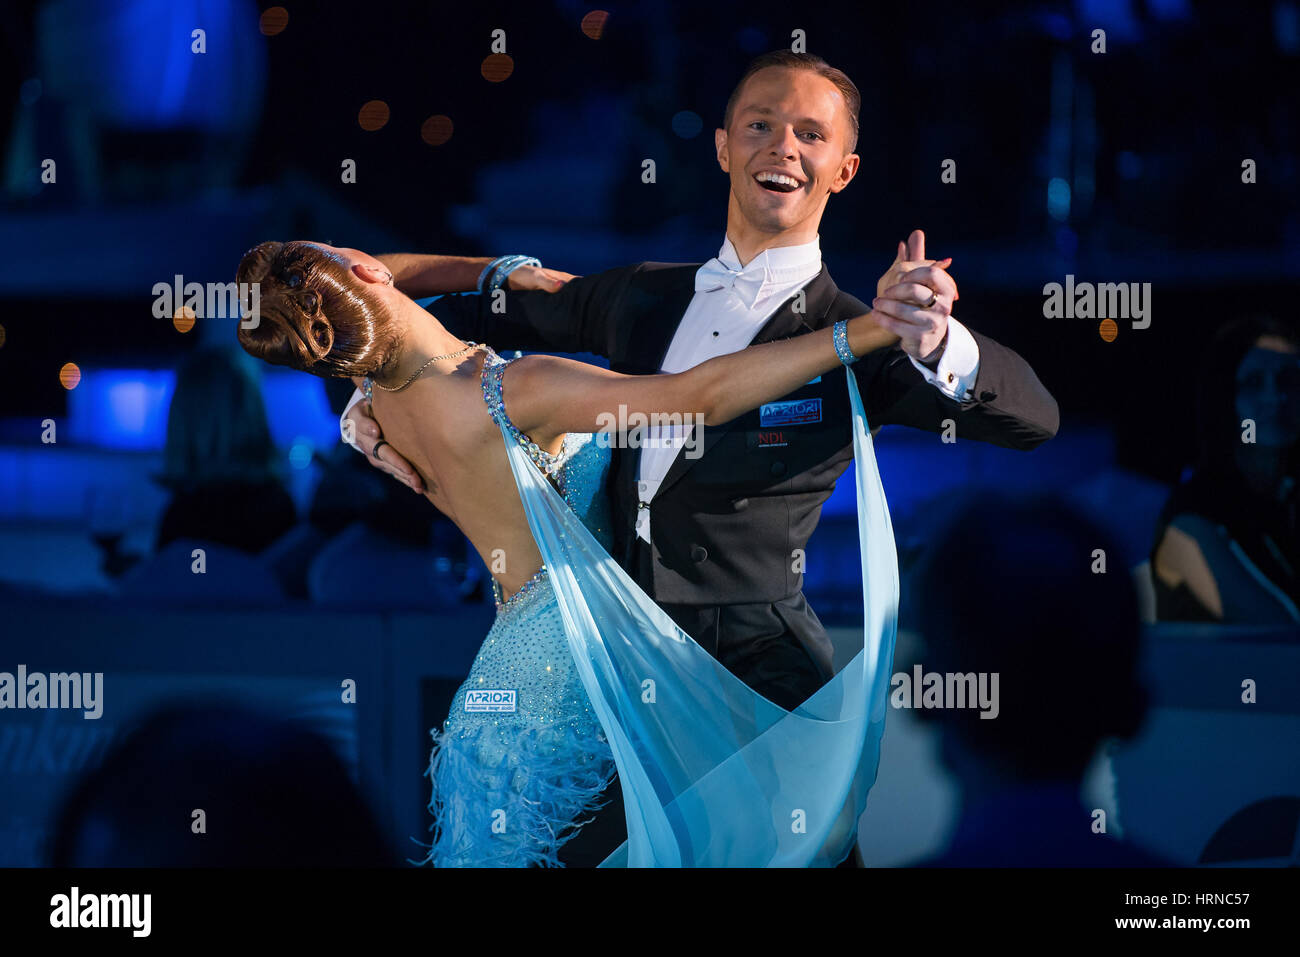 Moscou, Russie - Apr 26, 2015 : Couple fonctionne à l'événement de danse de bal à l'Open 2015 Championnat de l'Amérique latine professionnel européen. Banque D'Images